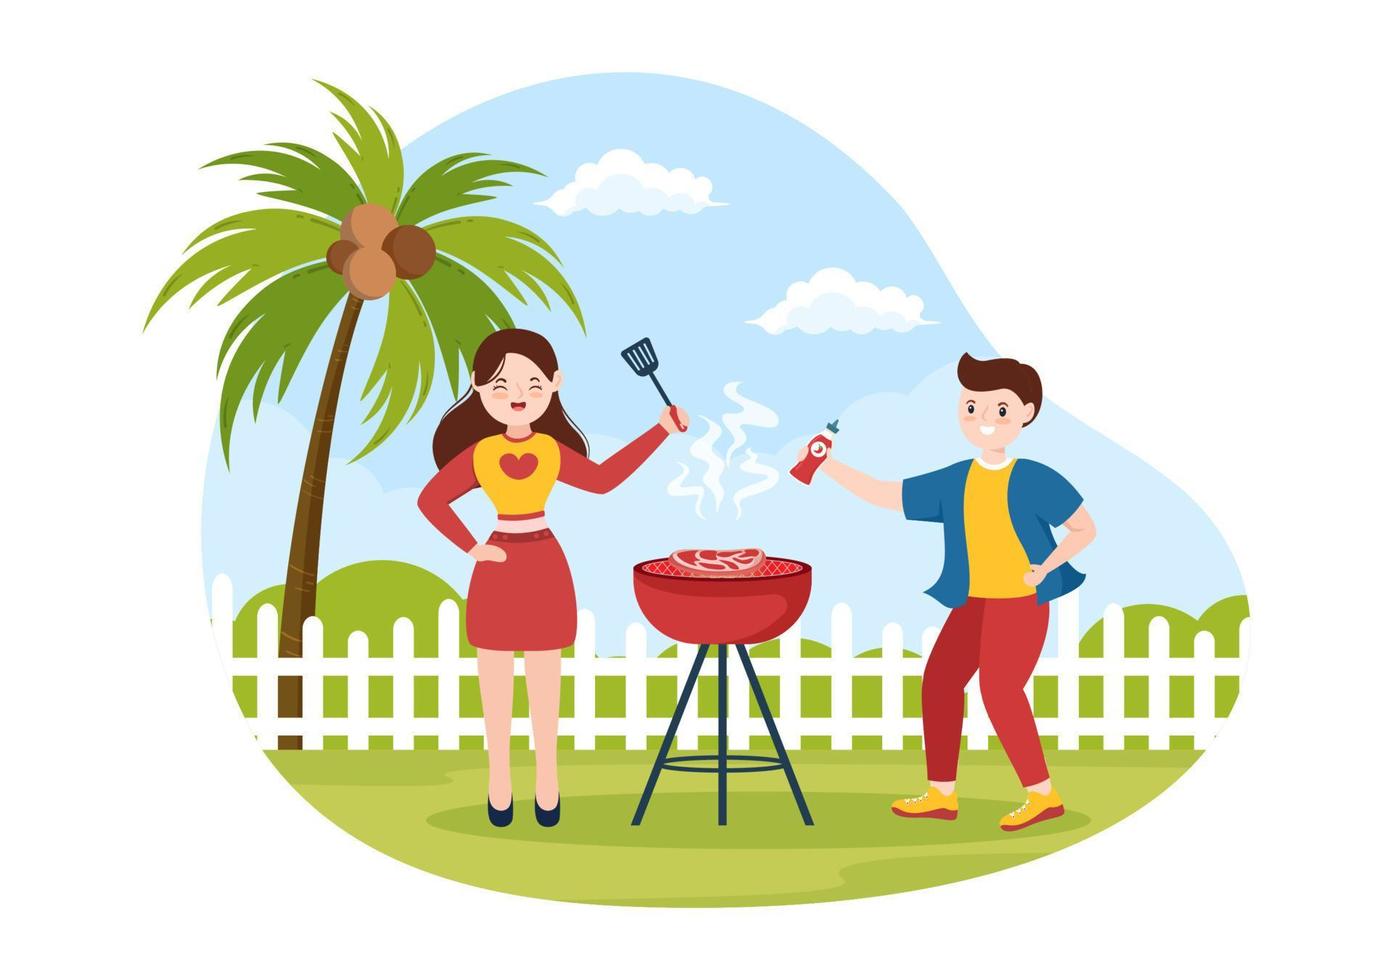 bbq of barbecue met steaks op grill, borden, worst, kip, groenten en mensen op picknick of feest in het park in platte cartoonillustratie vector